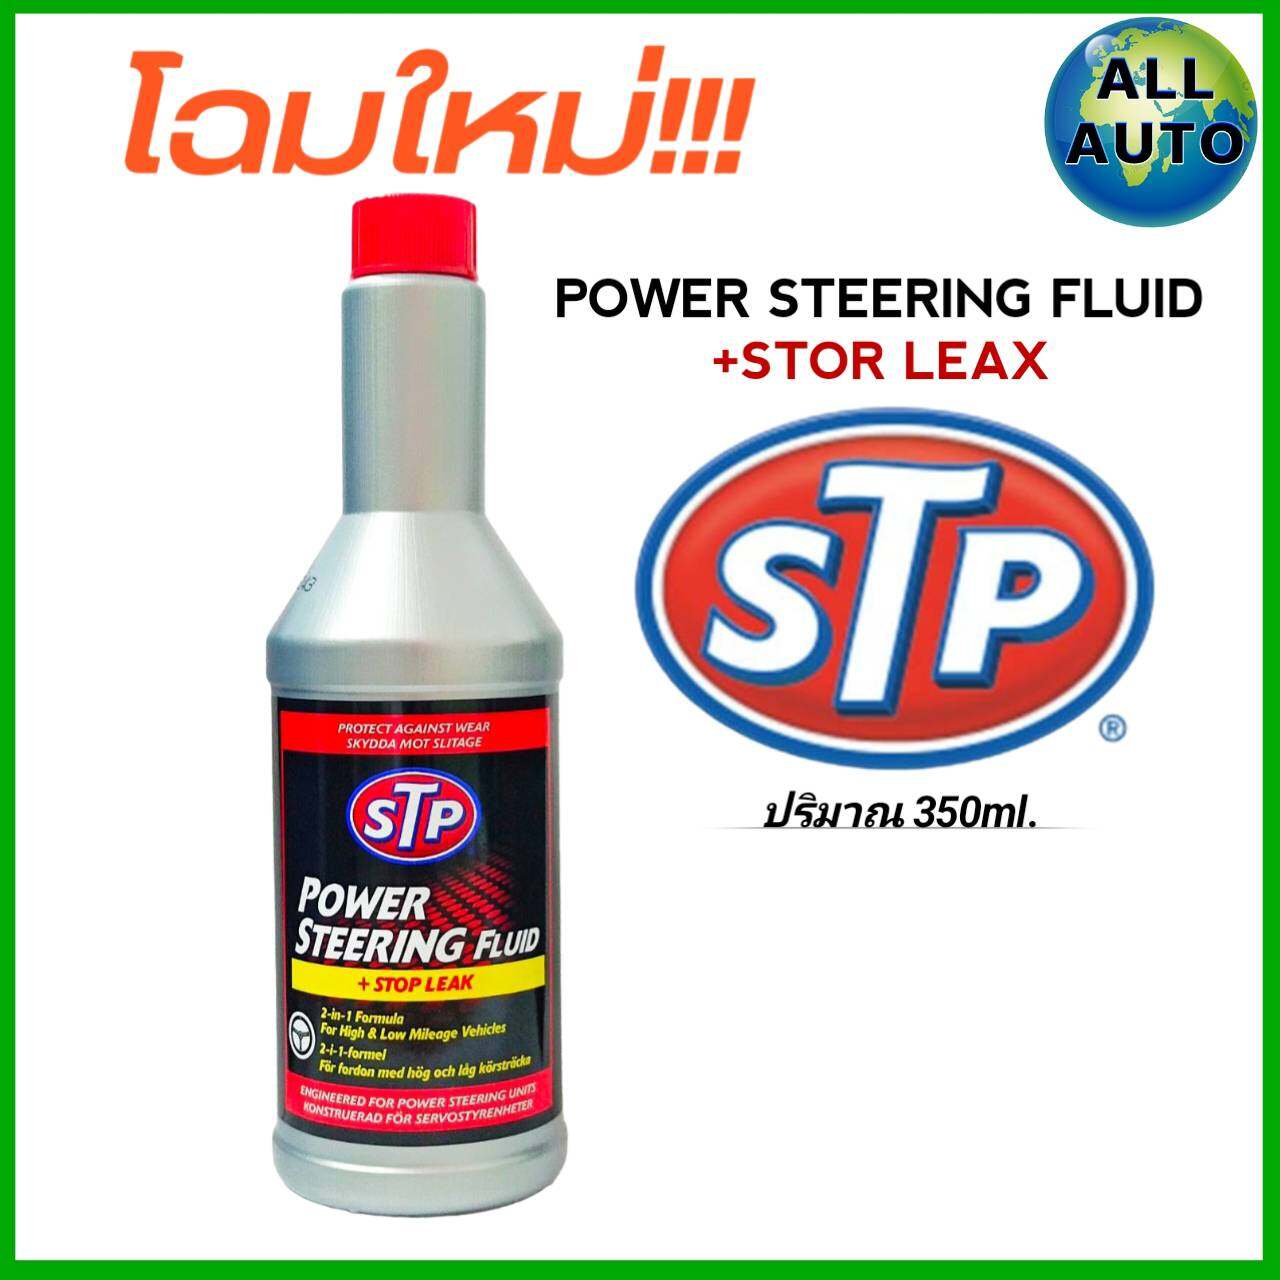 ภาพที่ให้รายละเอียดเกี่ยวกับ STP น้ำมันพาวเวอร์ สูตรหยุดรั่ว STP Power Steering Fluid & Stop Leak ( 350 mL. )